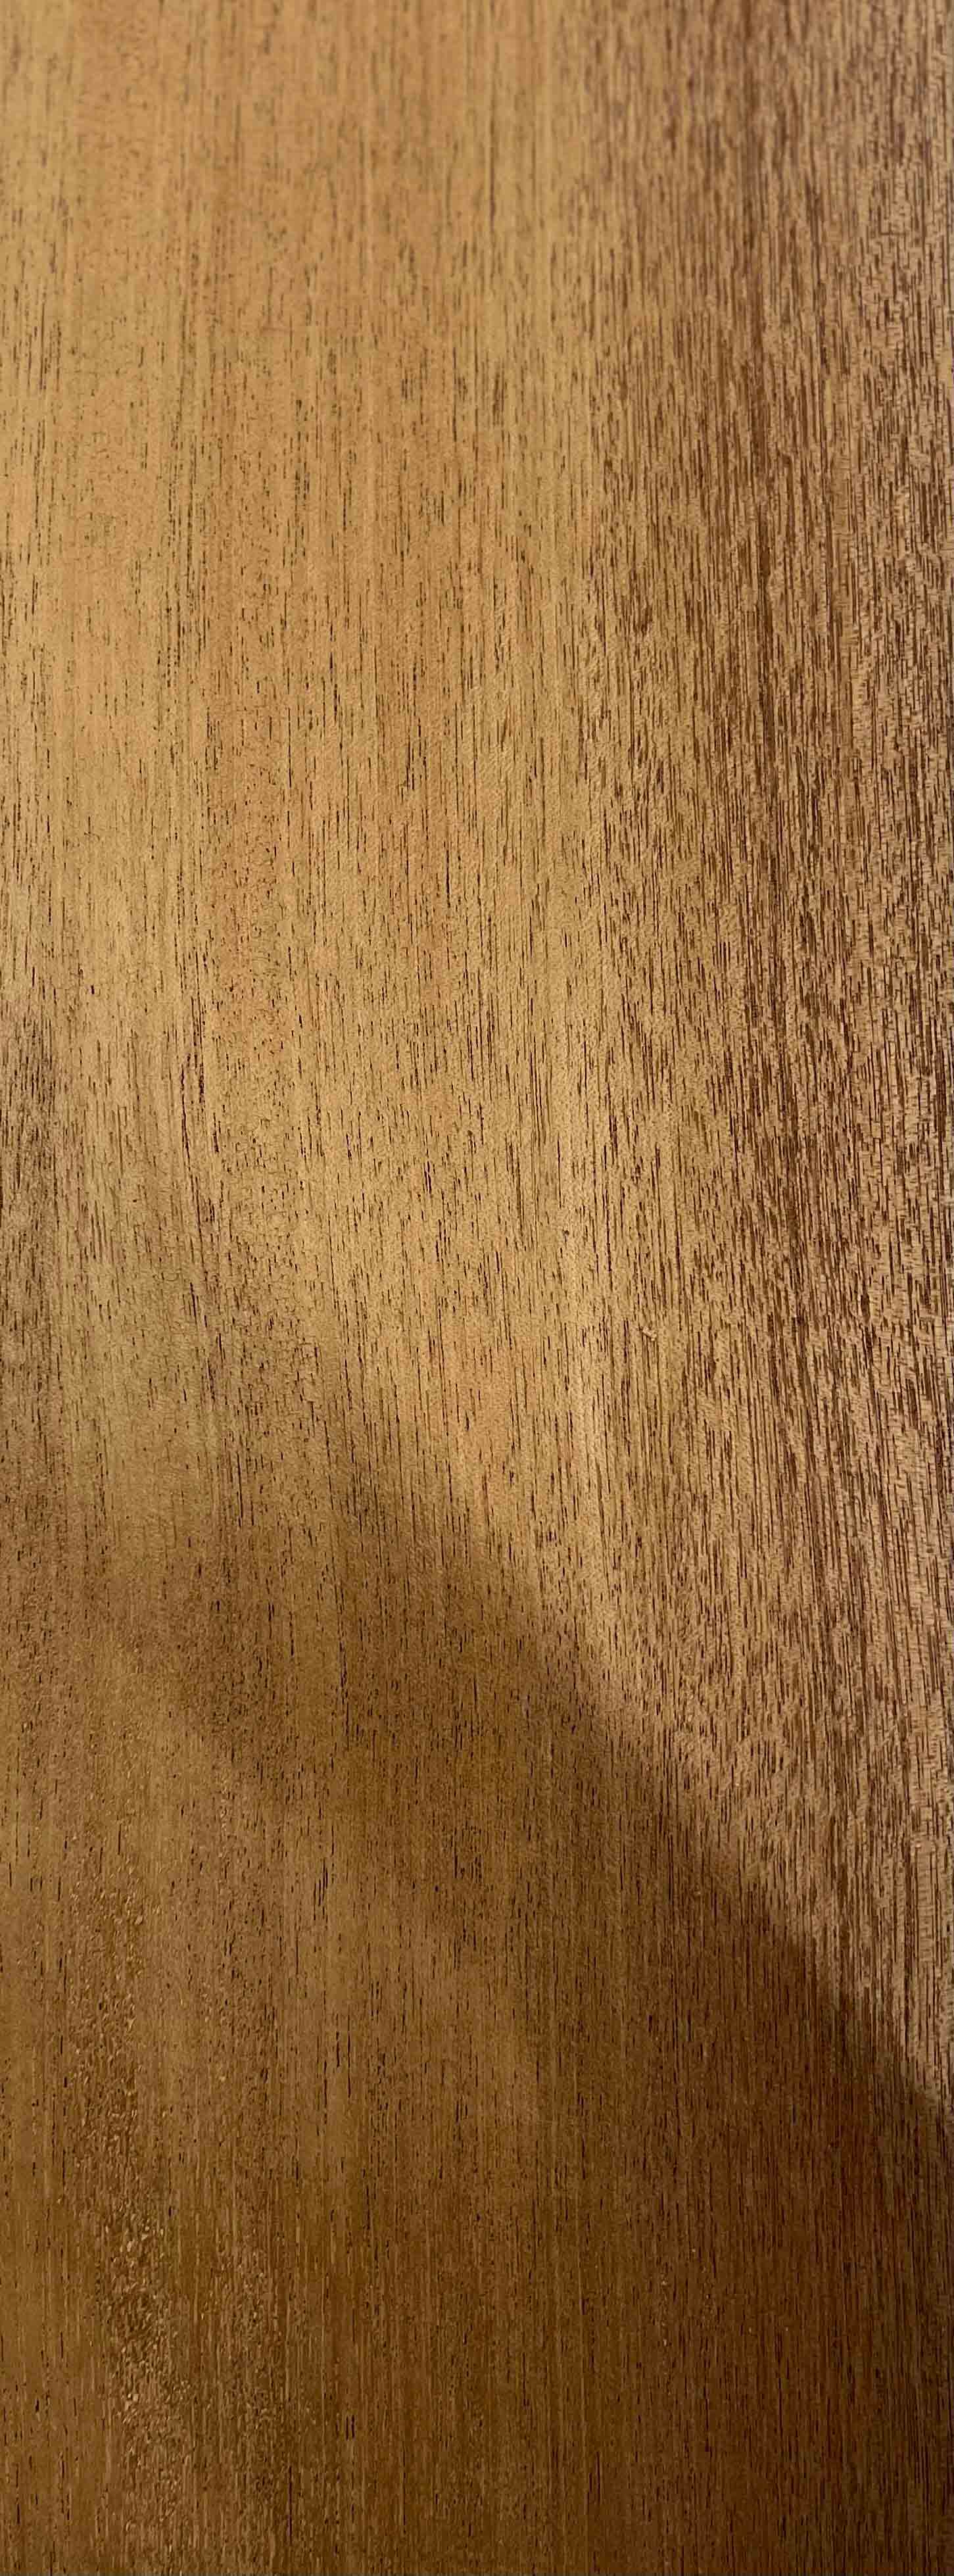 Tablones de madera dura de caoba, paquete de 4 unidades de madera de caoba  para manualidades de madera sin terminar, 1/4 de pulgada (0.236 in), madera